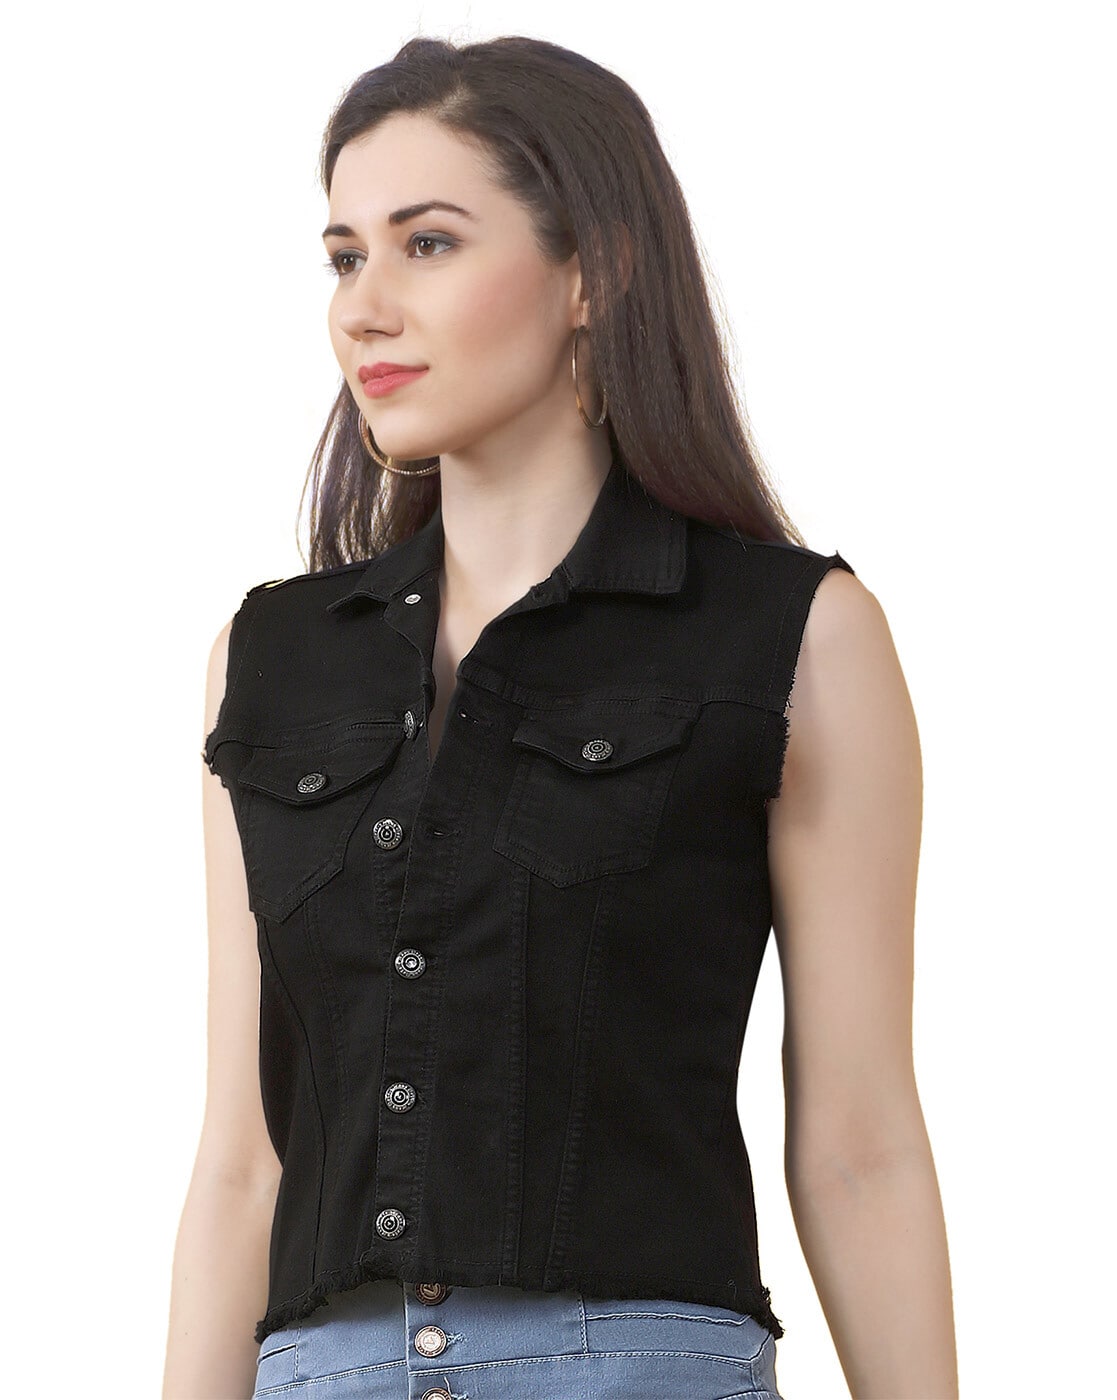 Buy Girls Black Distressed Neon Button Denim Jacket Online at Sassafras